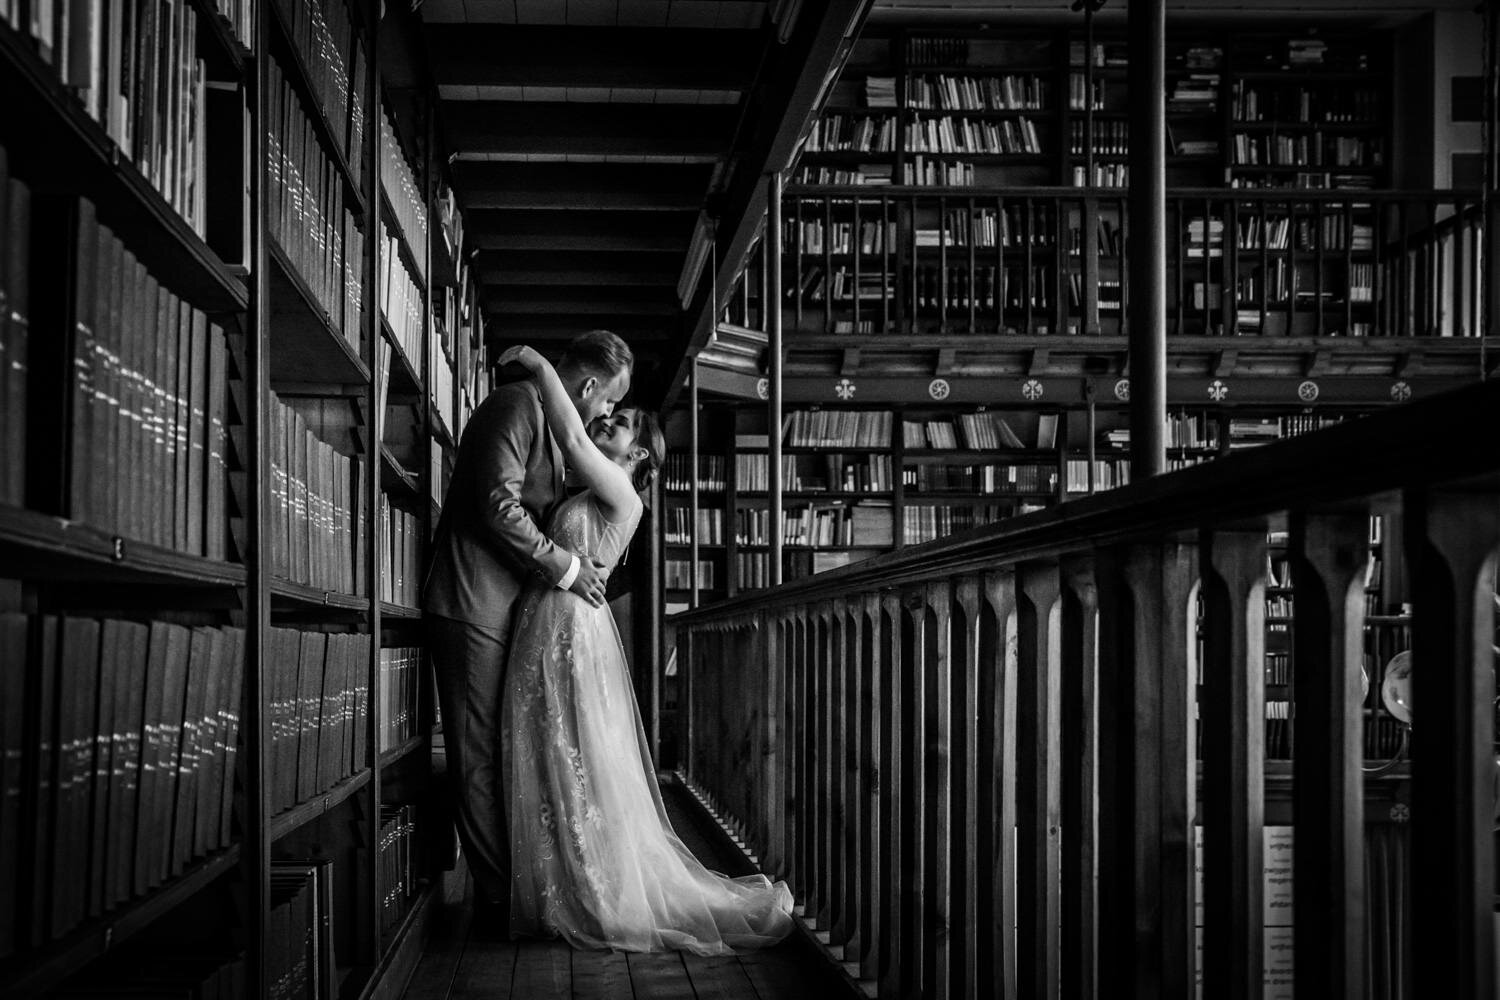  Hier zie je een bruidspaar in de bibliotheek. Een prachtige grote ruimte waar je hele mooie foto’s kunt maken. Het is een super sfeervolle ruimte. Je kunt de geur van de boeken bijna ruiken op deze foto. Bij Bovendonk zijn vele zalen waar je gebruik